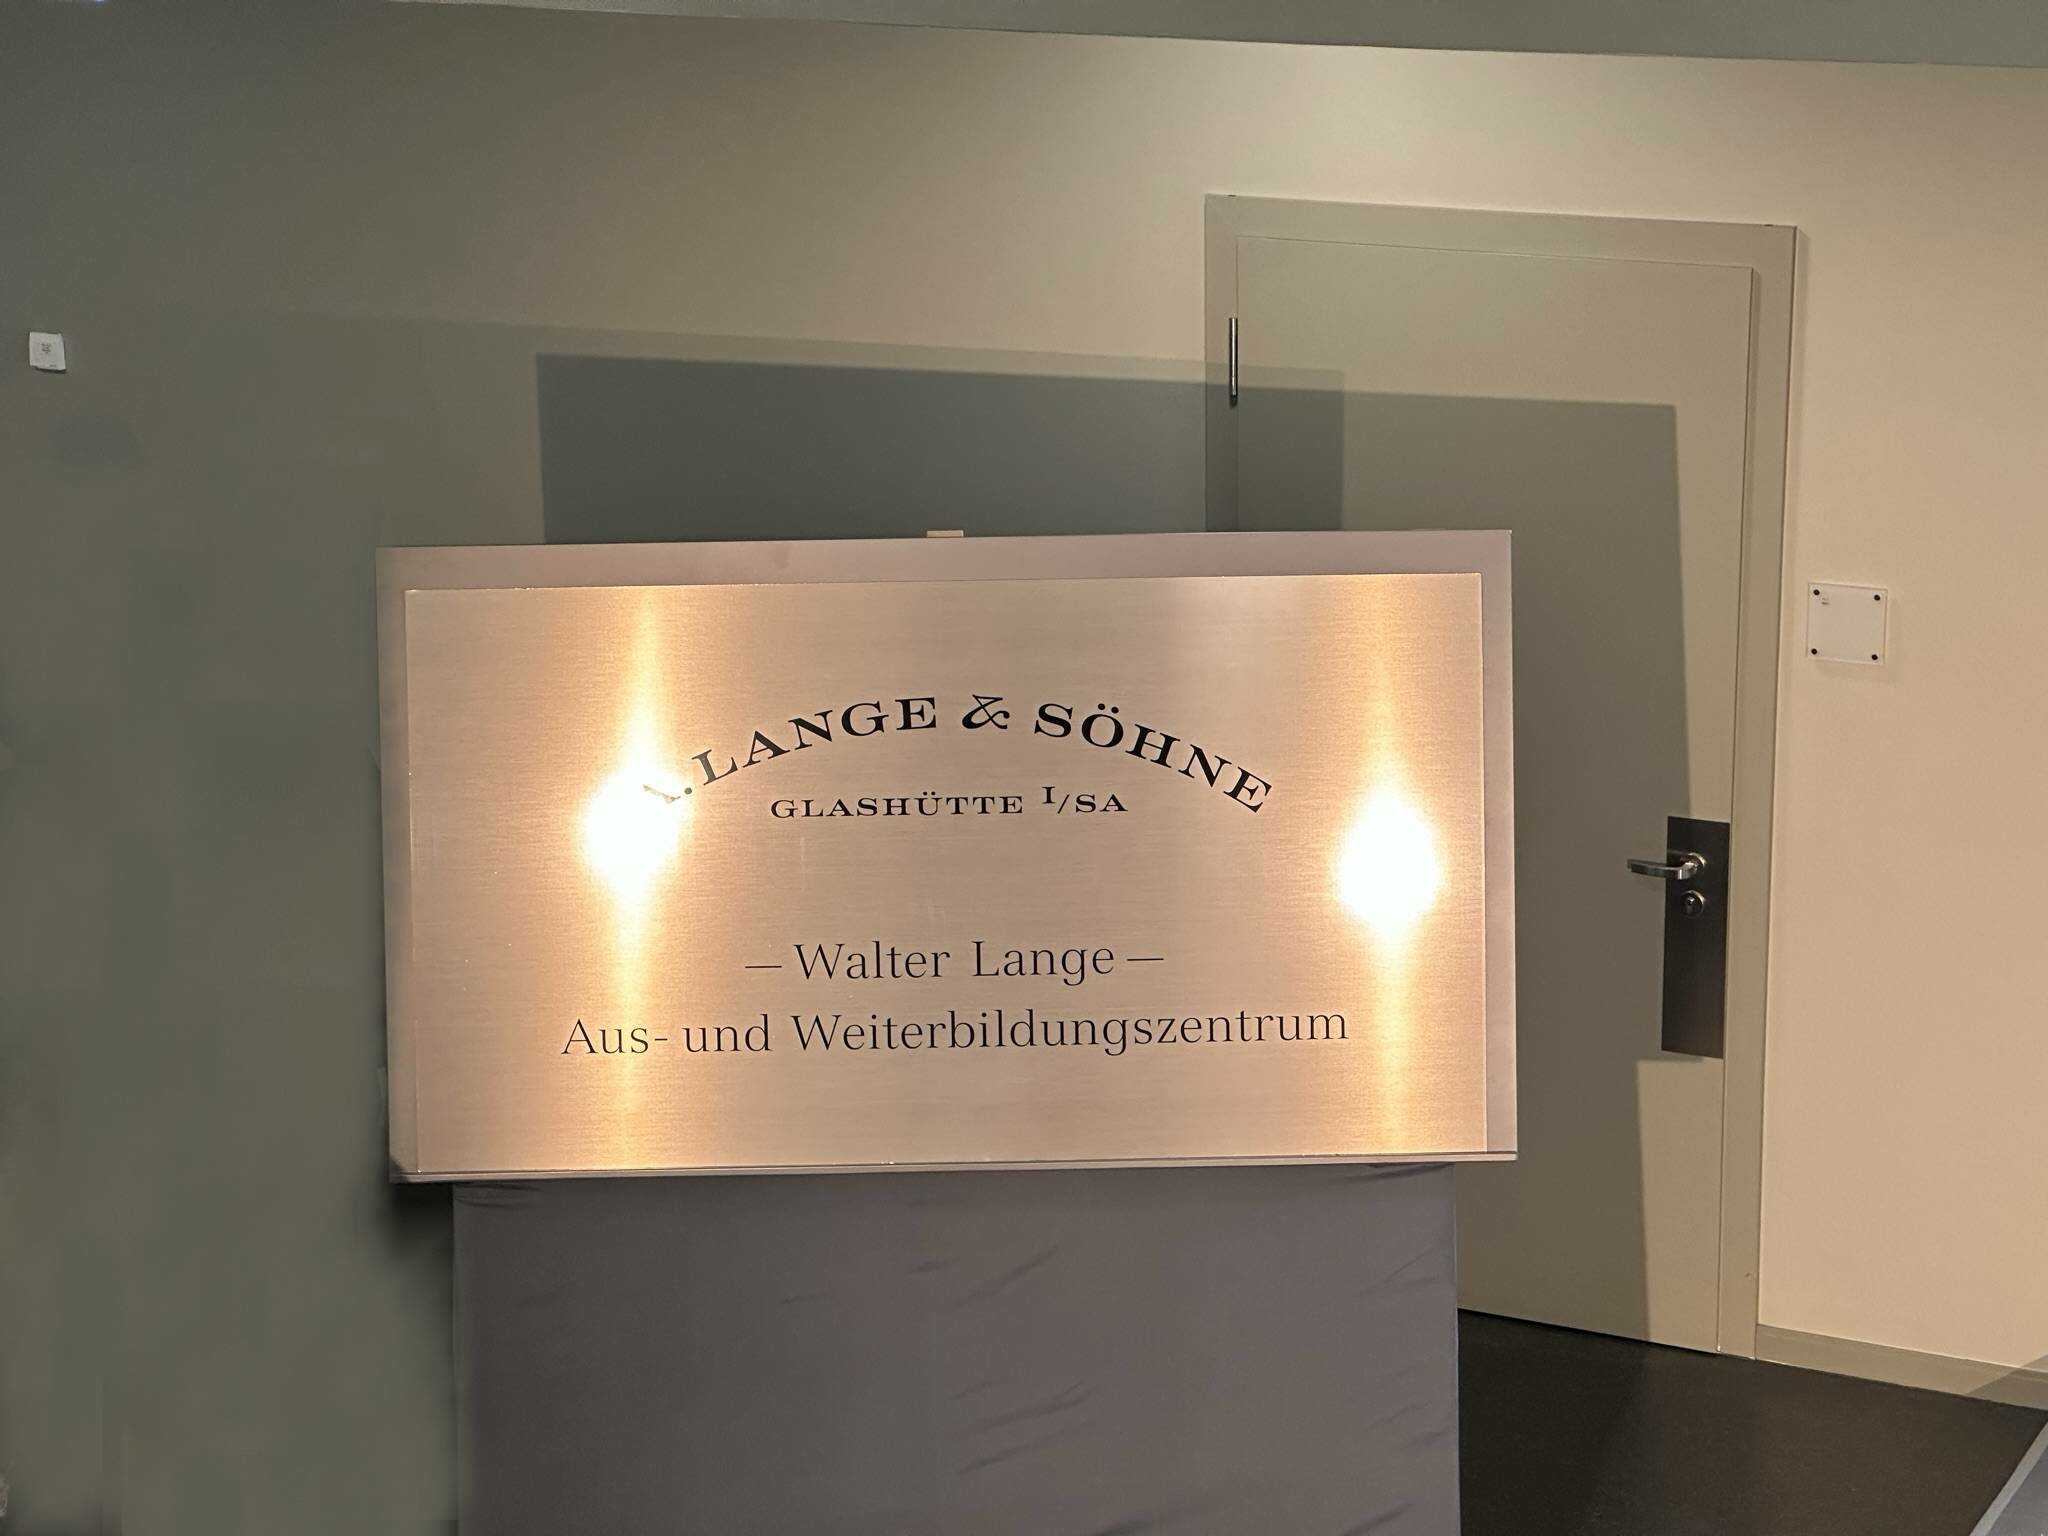 Weiterbildungszentrum von Lange & Söhne das nach Walter Lange benannt wurde